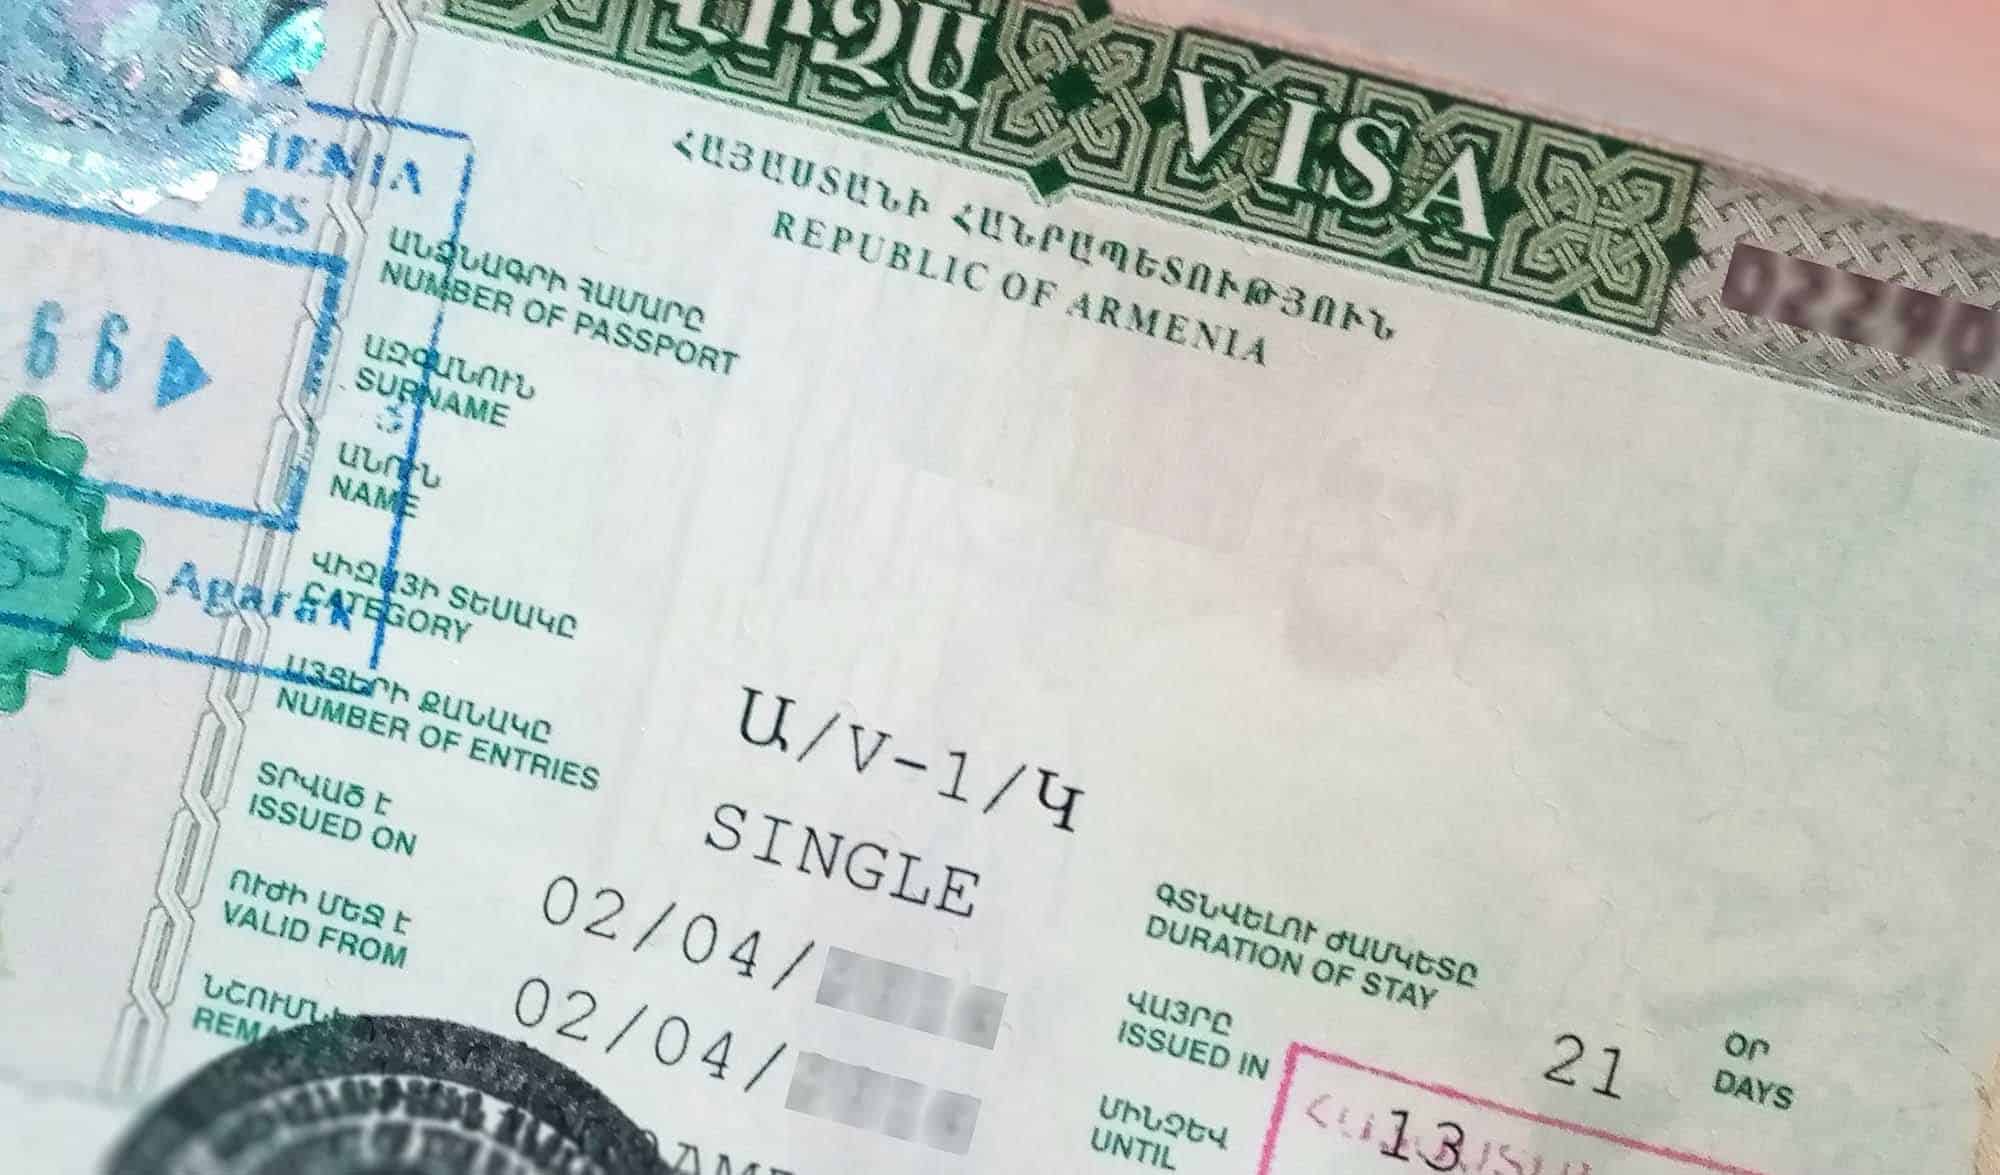 tourist visa for armenia